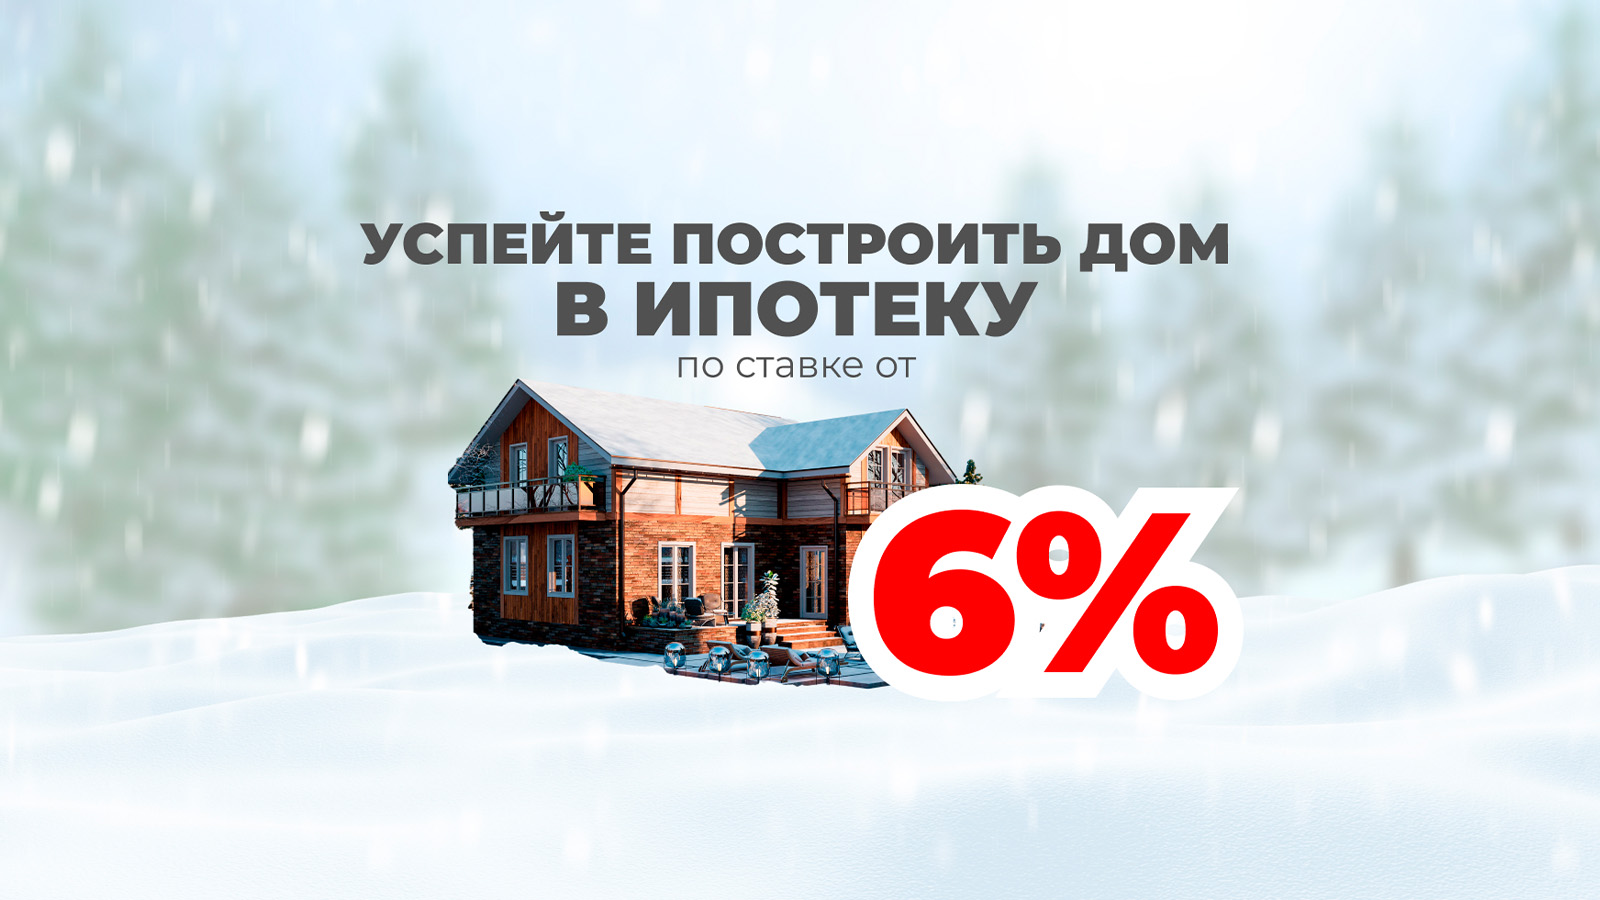 Успейте построить дом в ипотеку по ставке от 6% 